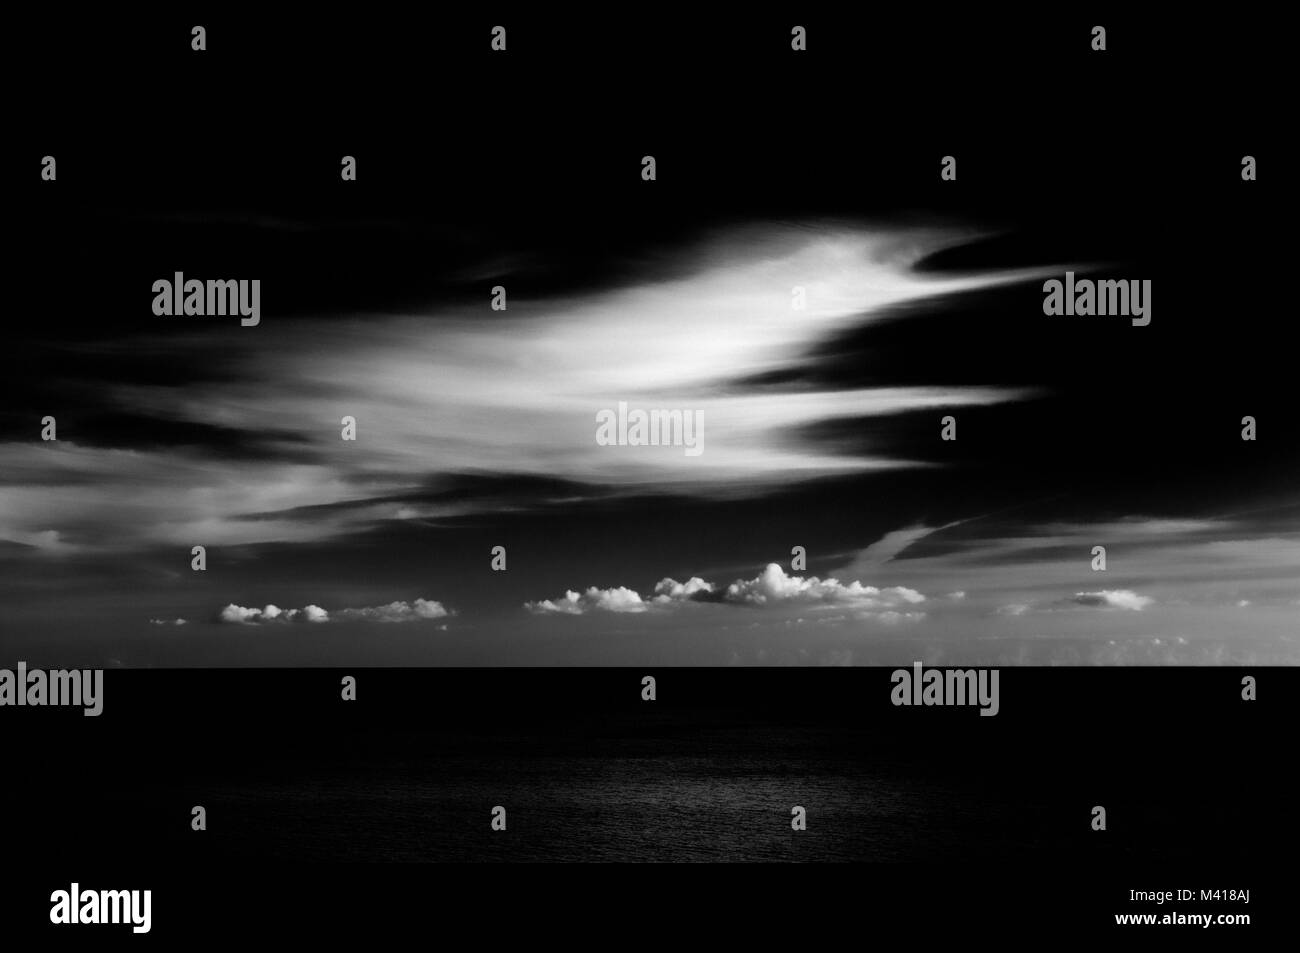 Zeitgenössische Kontrastreiche Schwarzweiß-Bild von markanten Wolkenformationen über eine ruhige See. Stockfoto